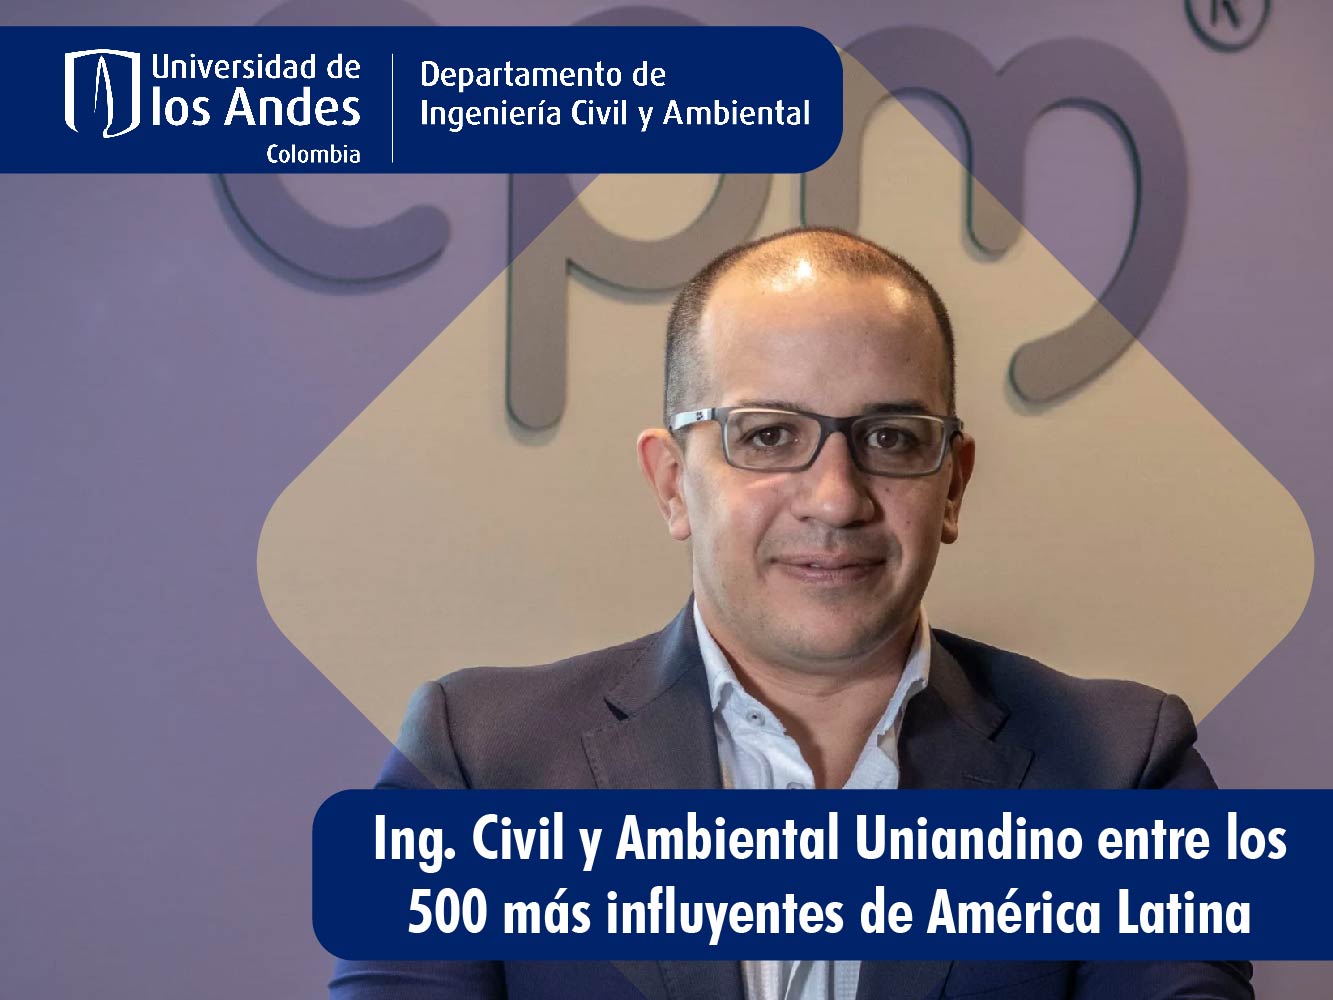 Ingeniero Civil y Ambiental uniandino Entre los 500 más influyentes de Latinoamérica